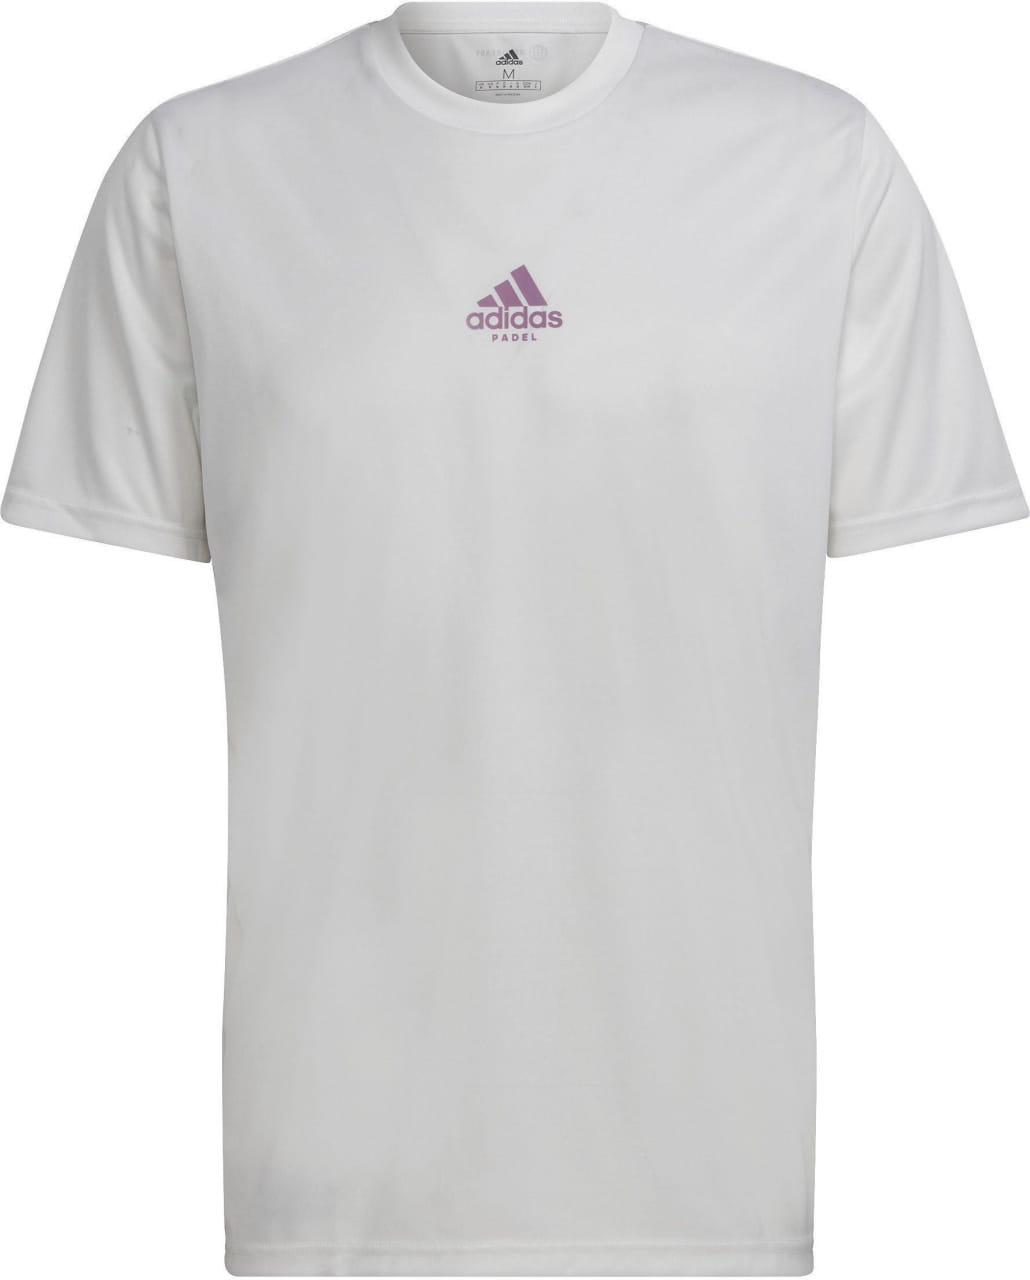 Tennishemd für Männer adidas M Pad G T